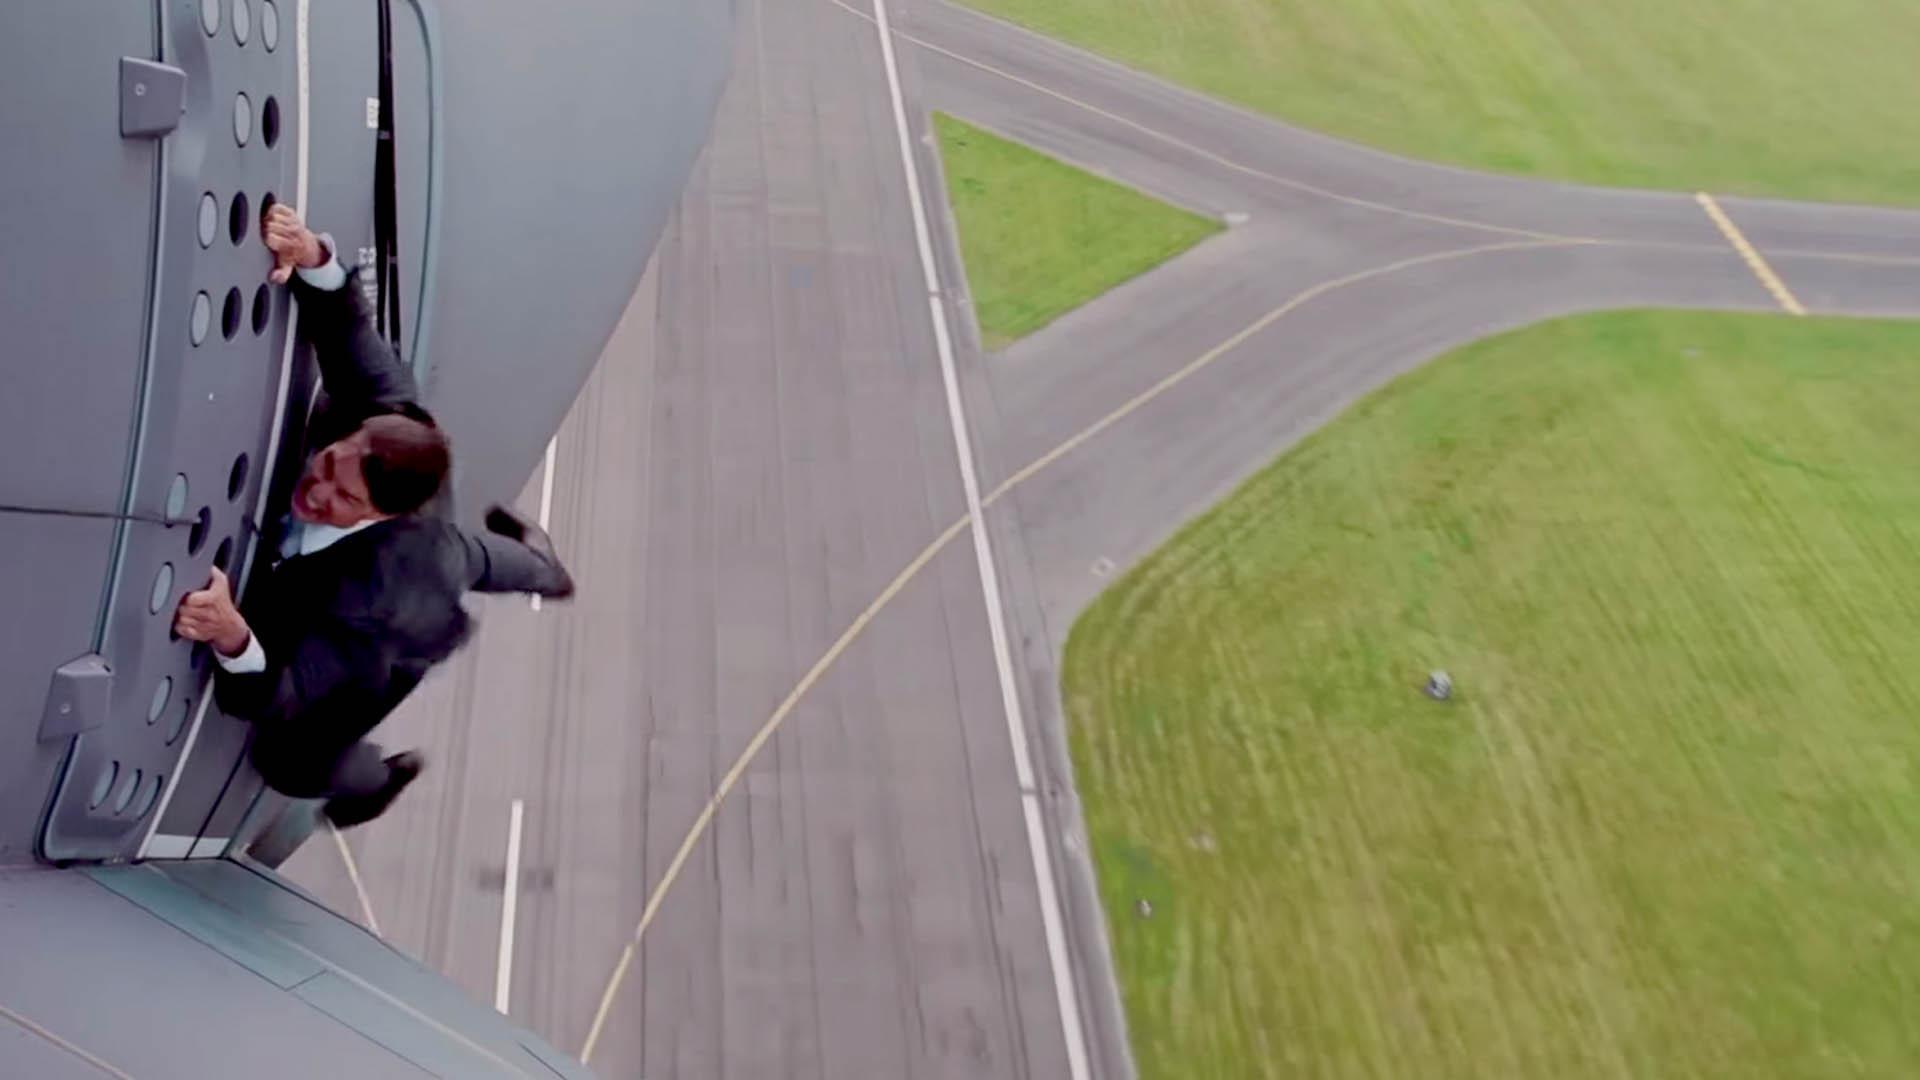 آویزان بودن تام کروز از یک هواپیمای درحال اوج گیری در مجموعه Mission impossible